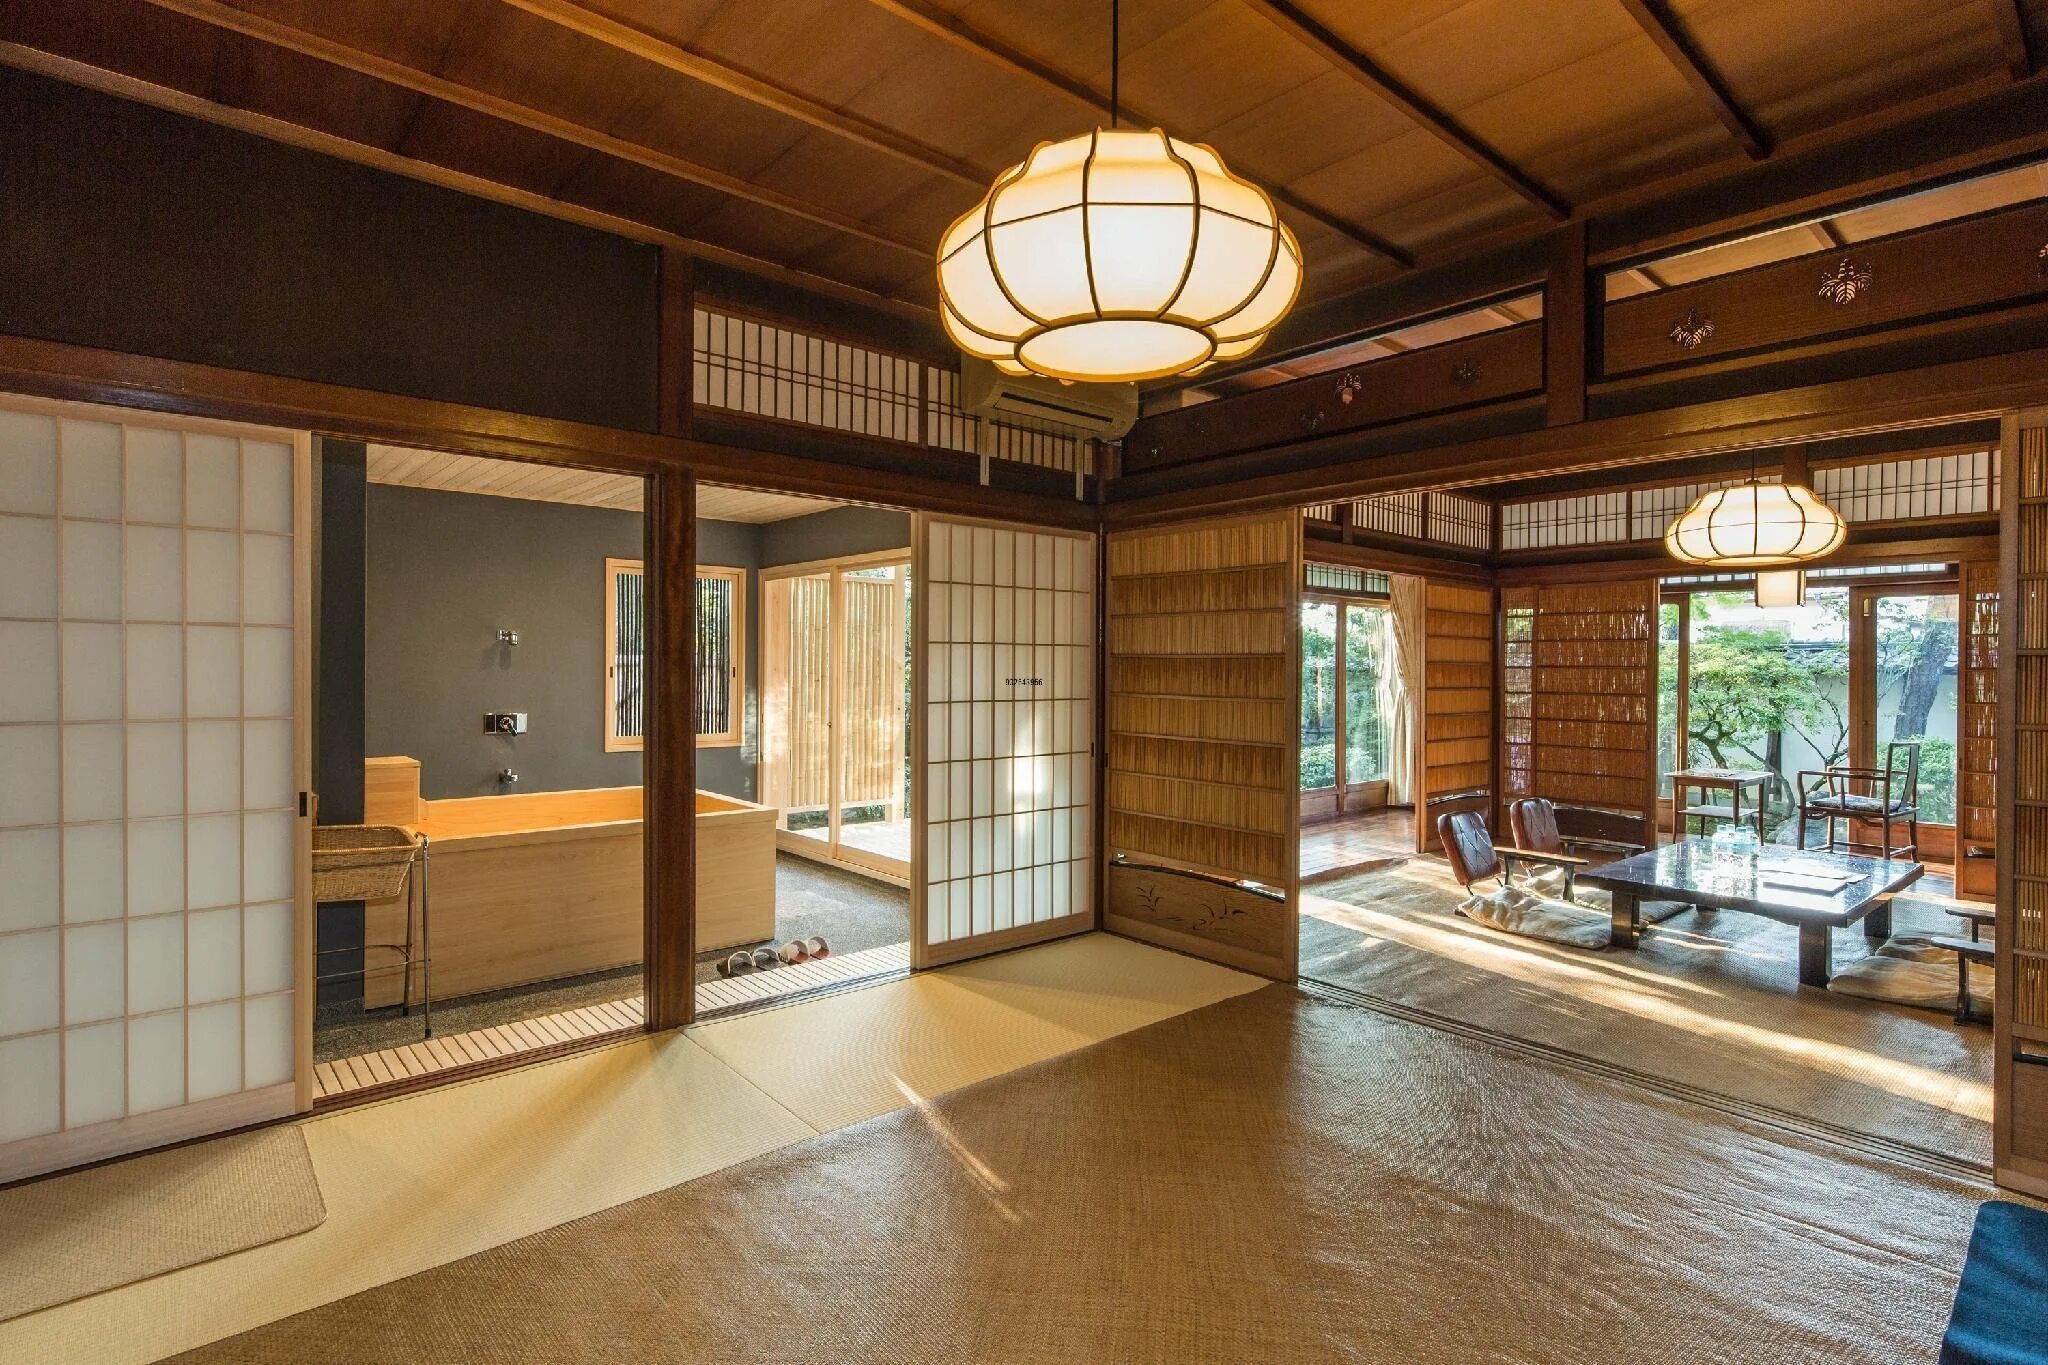 Традиционная японская гостиница рёкан. Рёкан гостиница в Киото. Стиль Минка японский. Минка дом в Японии.